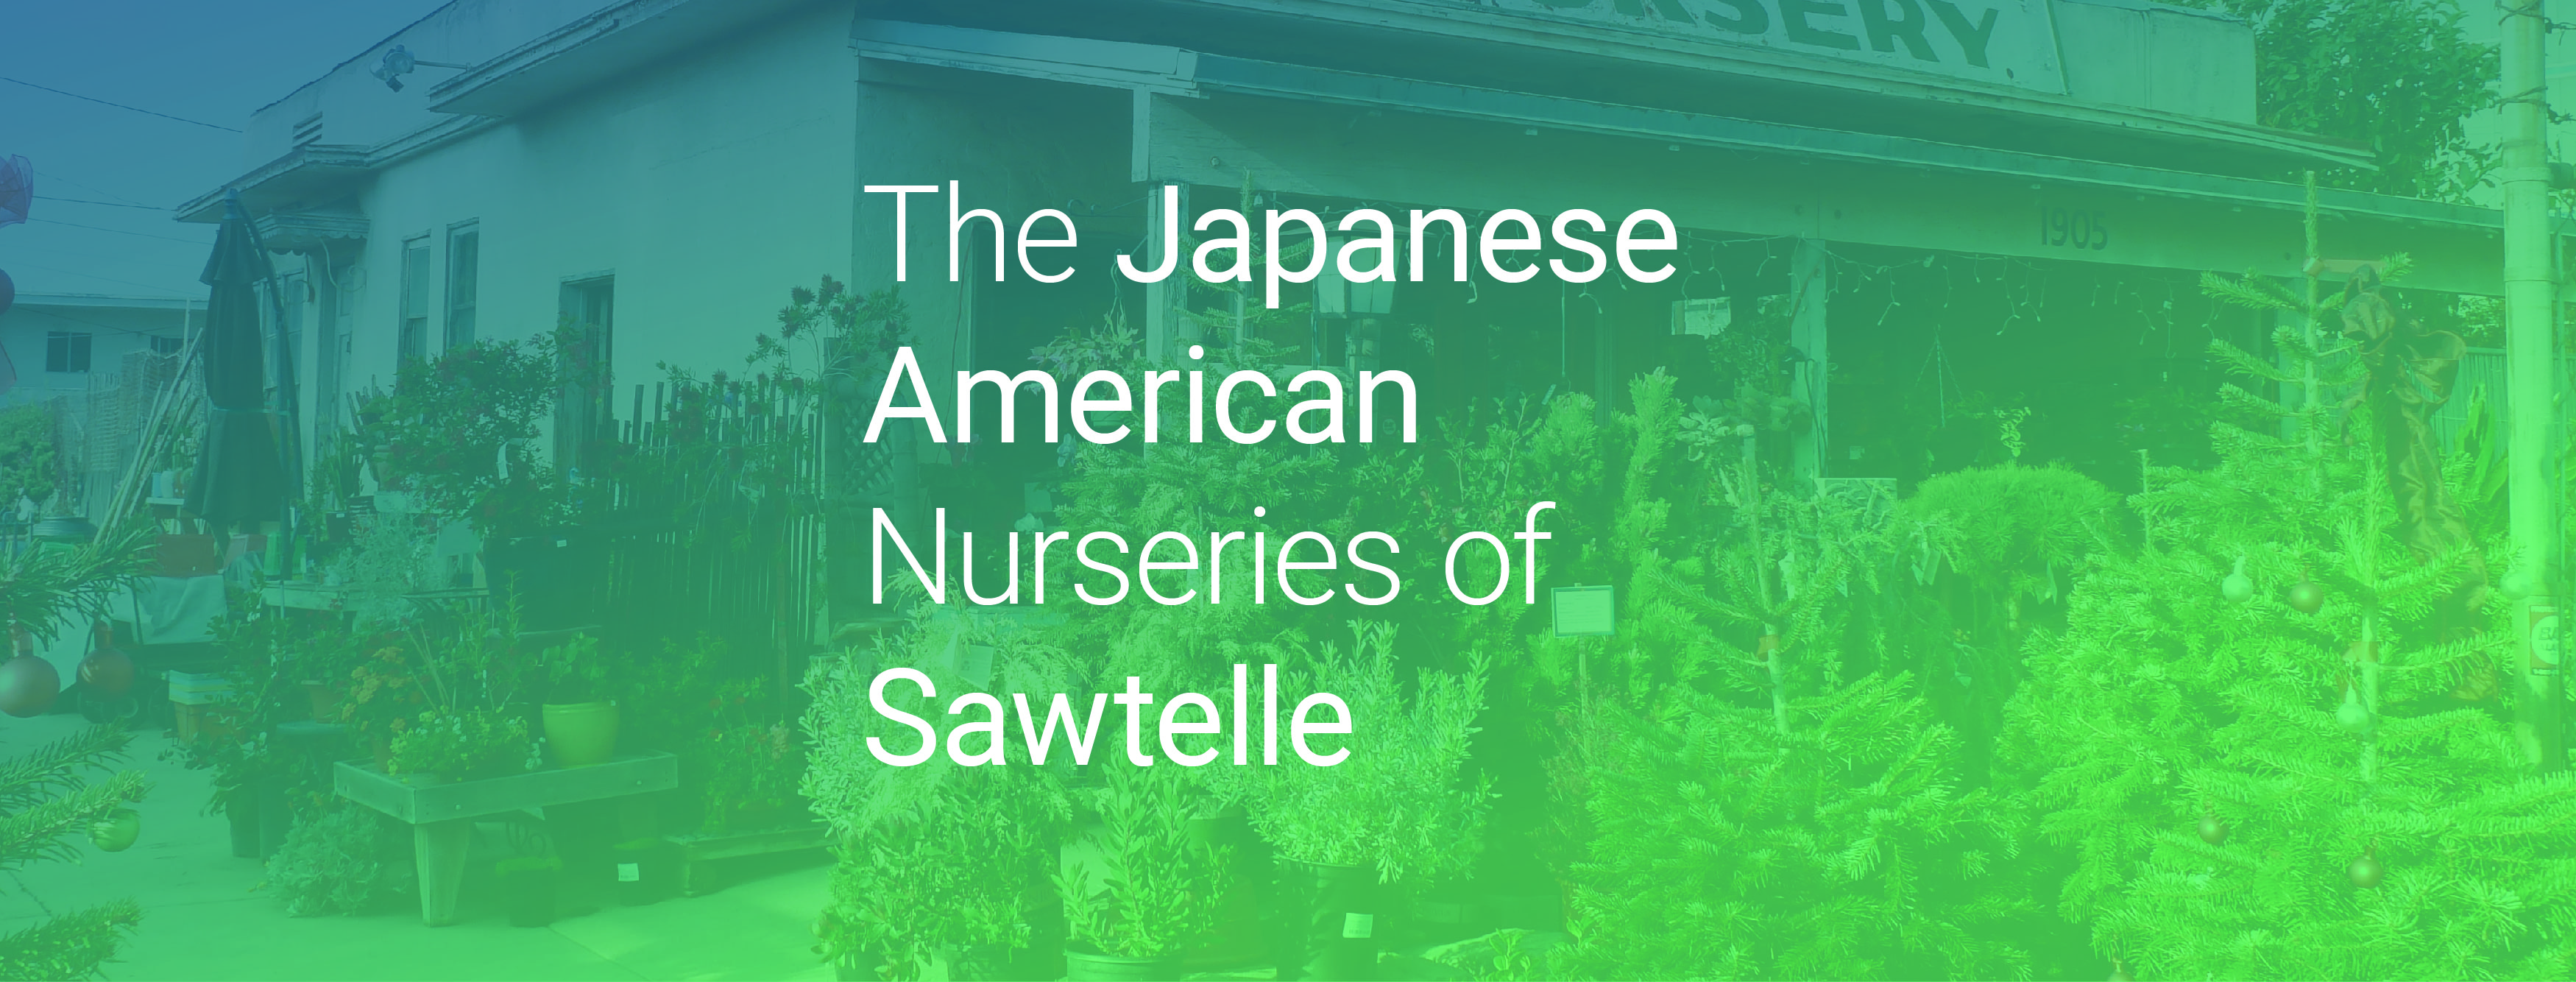 Japanese American Nurseries of Sawtelle